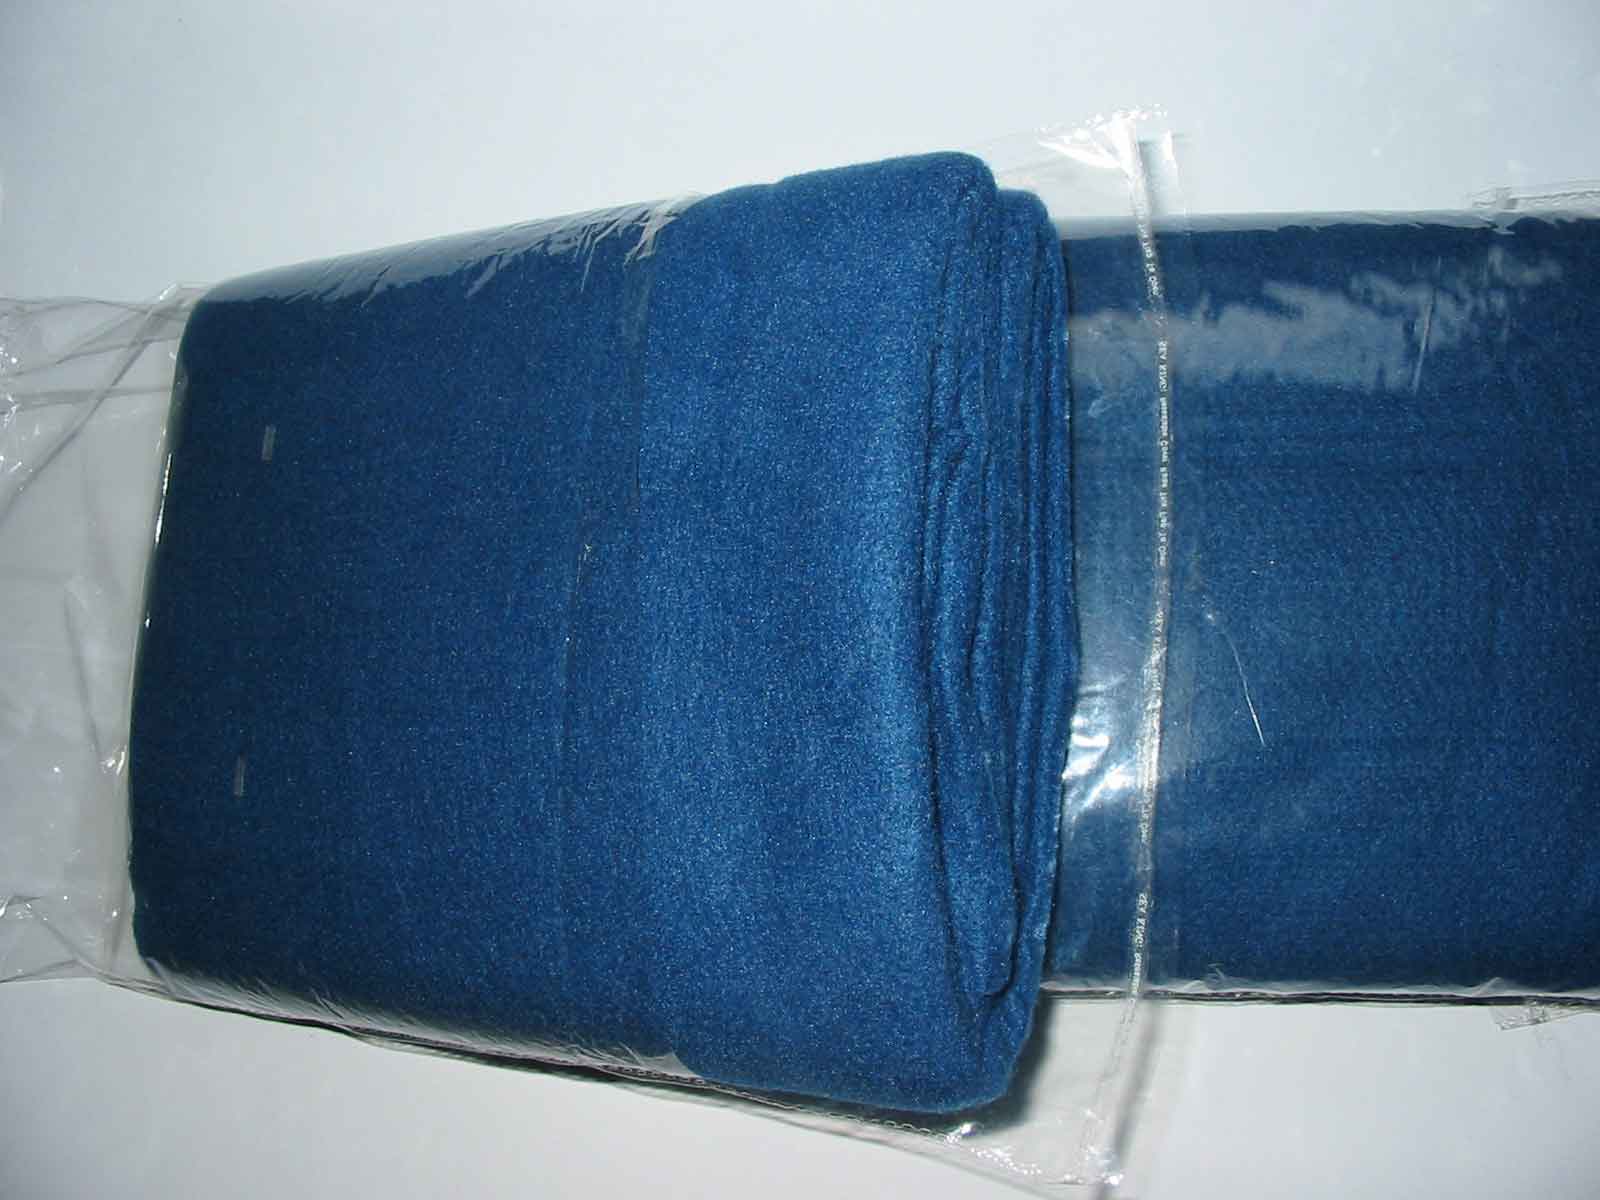  Disposable Blankets For Airlines (Couvertures à usage unique pour Airlines)